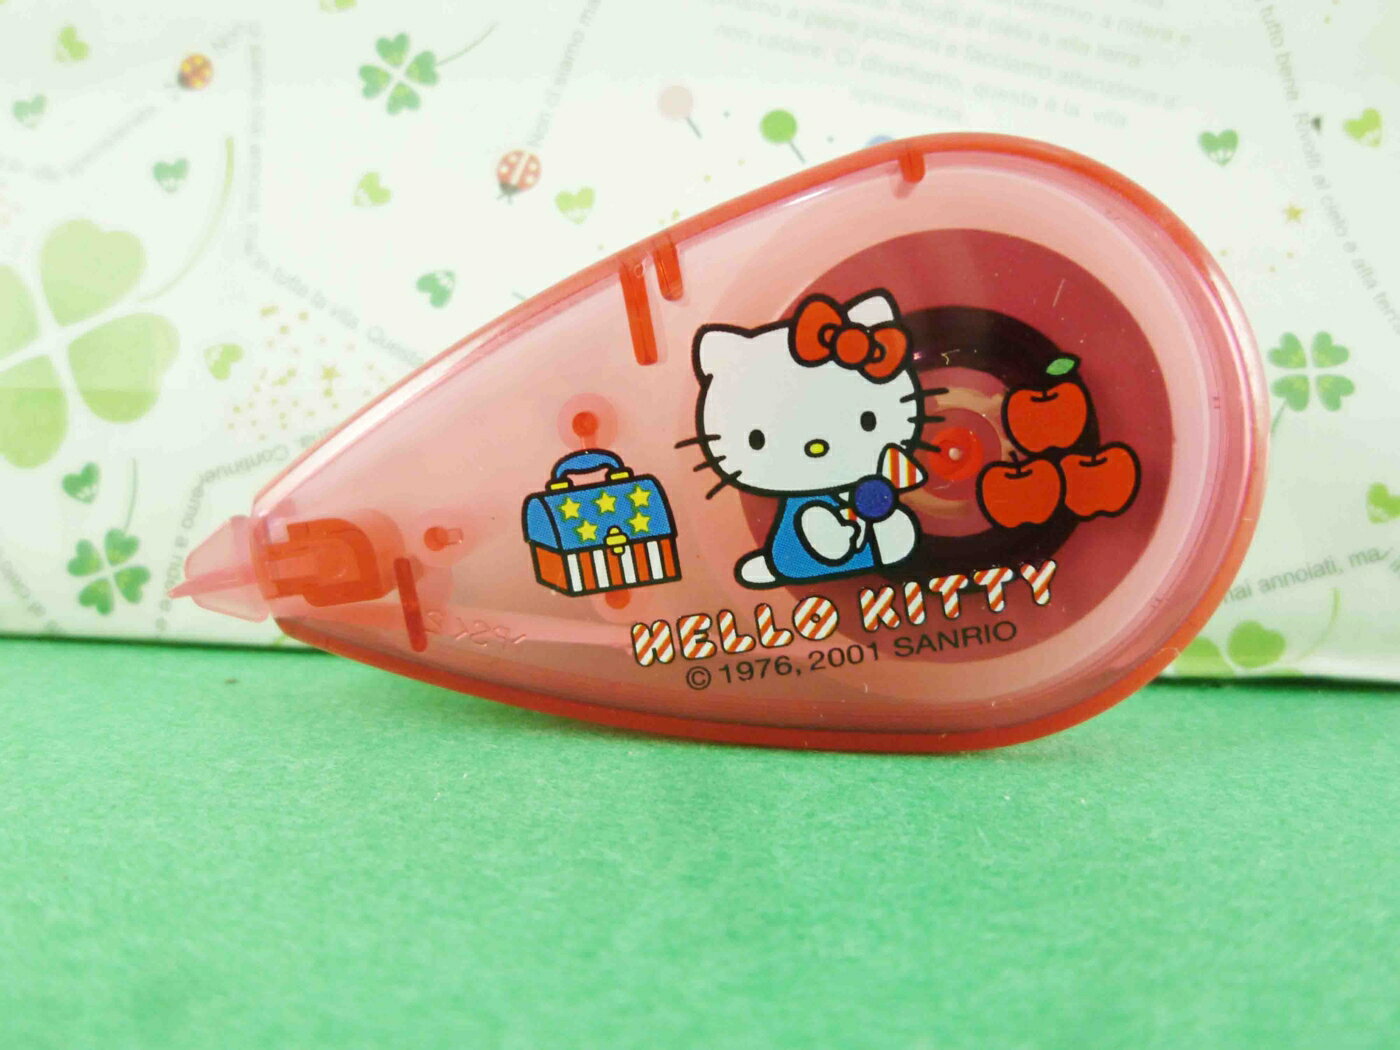 【震撼精品百貨】Hello Kitty 凱蒂貓 立可帶-紅蘋果 震撼日式精品百貨